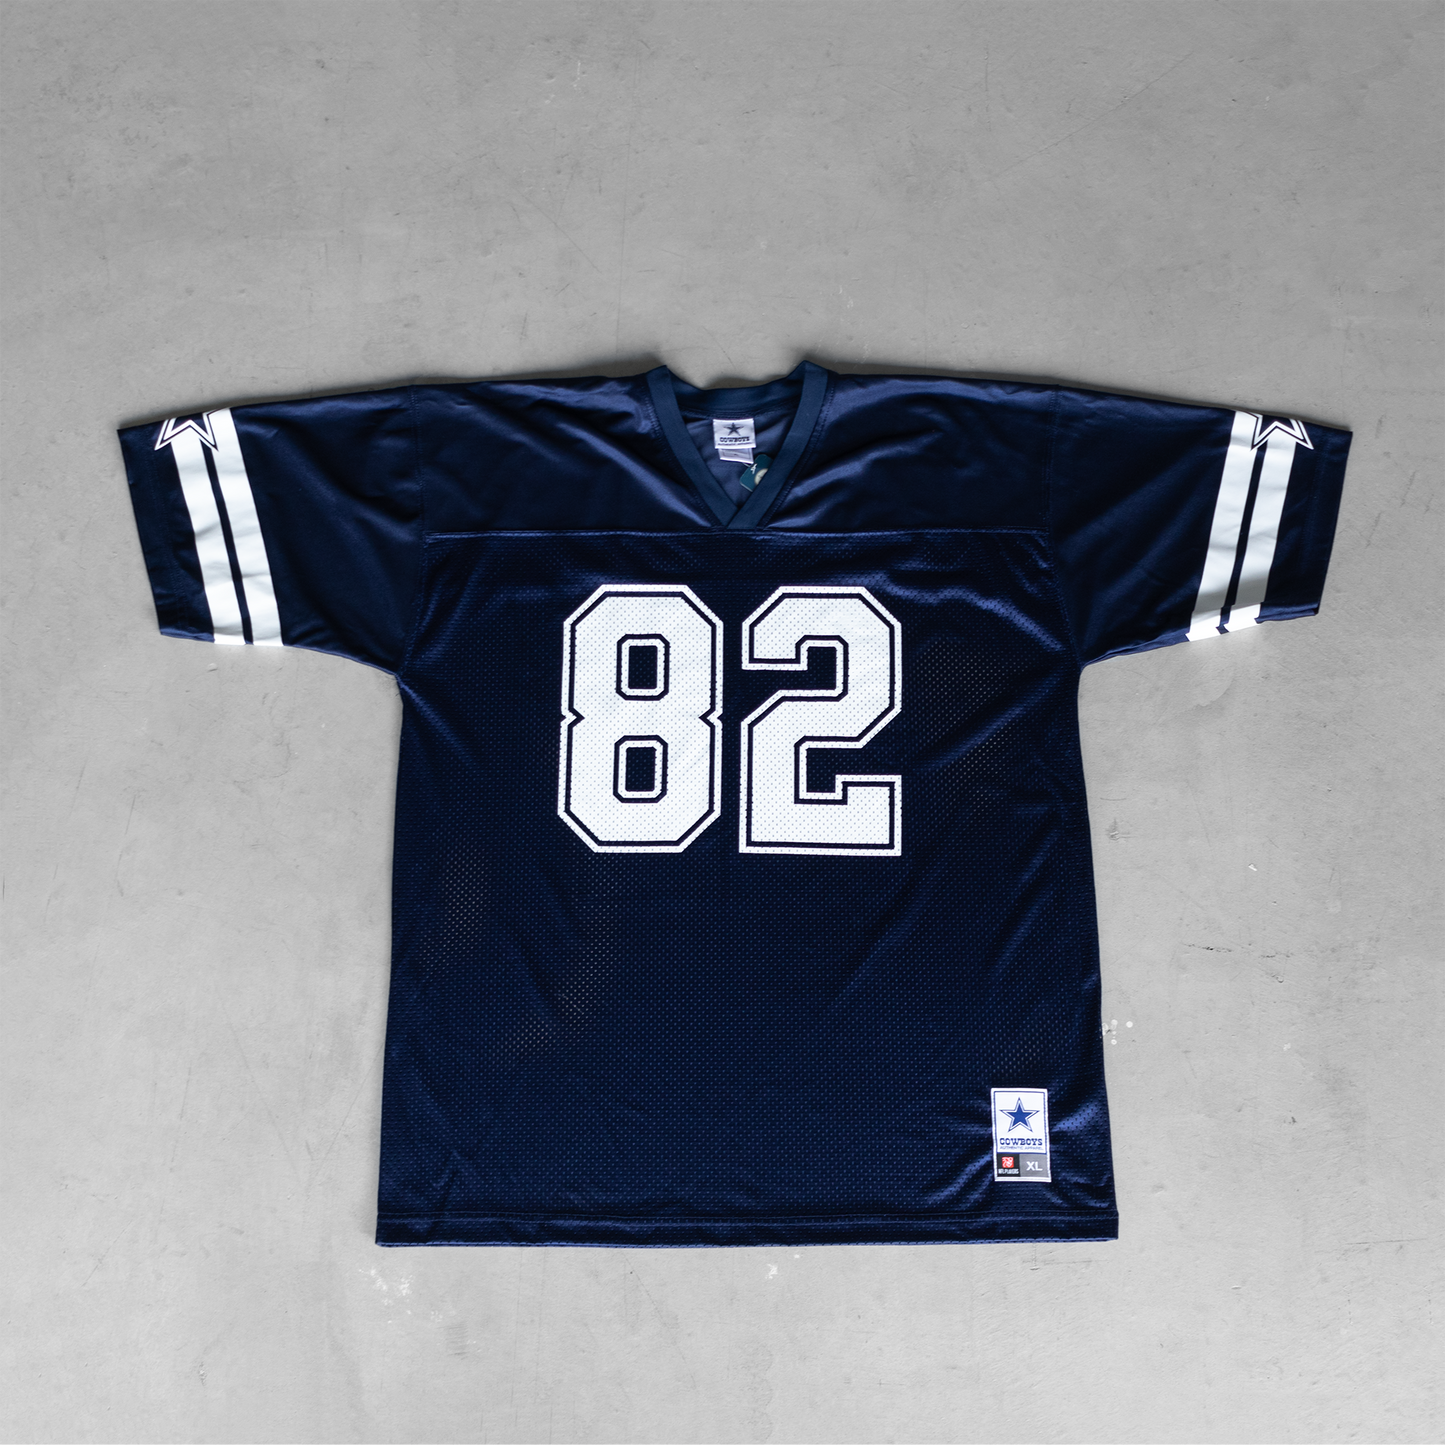 Vintage NFL Dallas Cowboys Jason Witten #82 Football Jersey (XL)